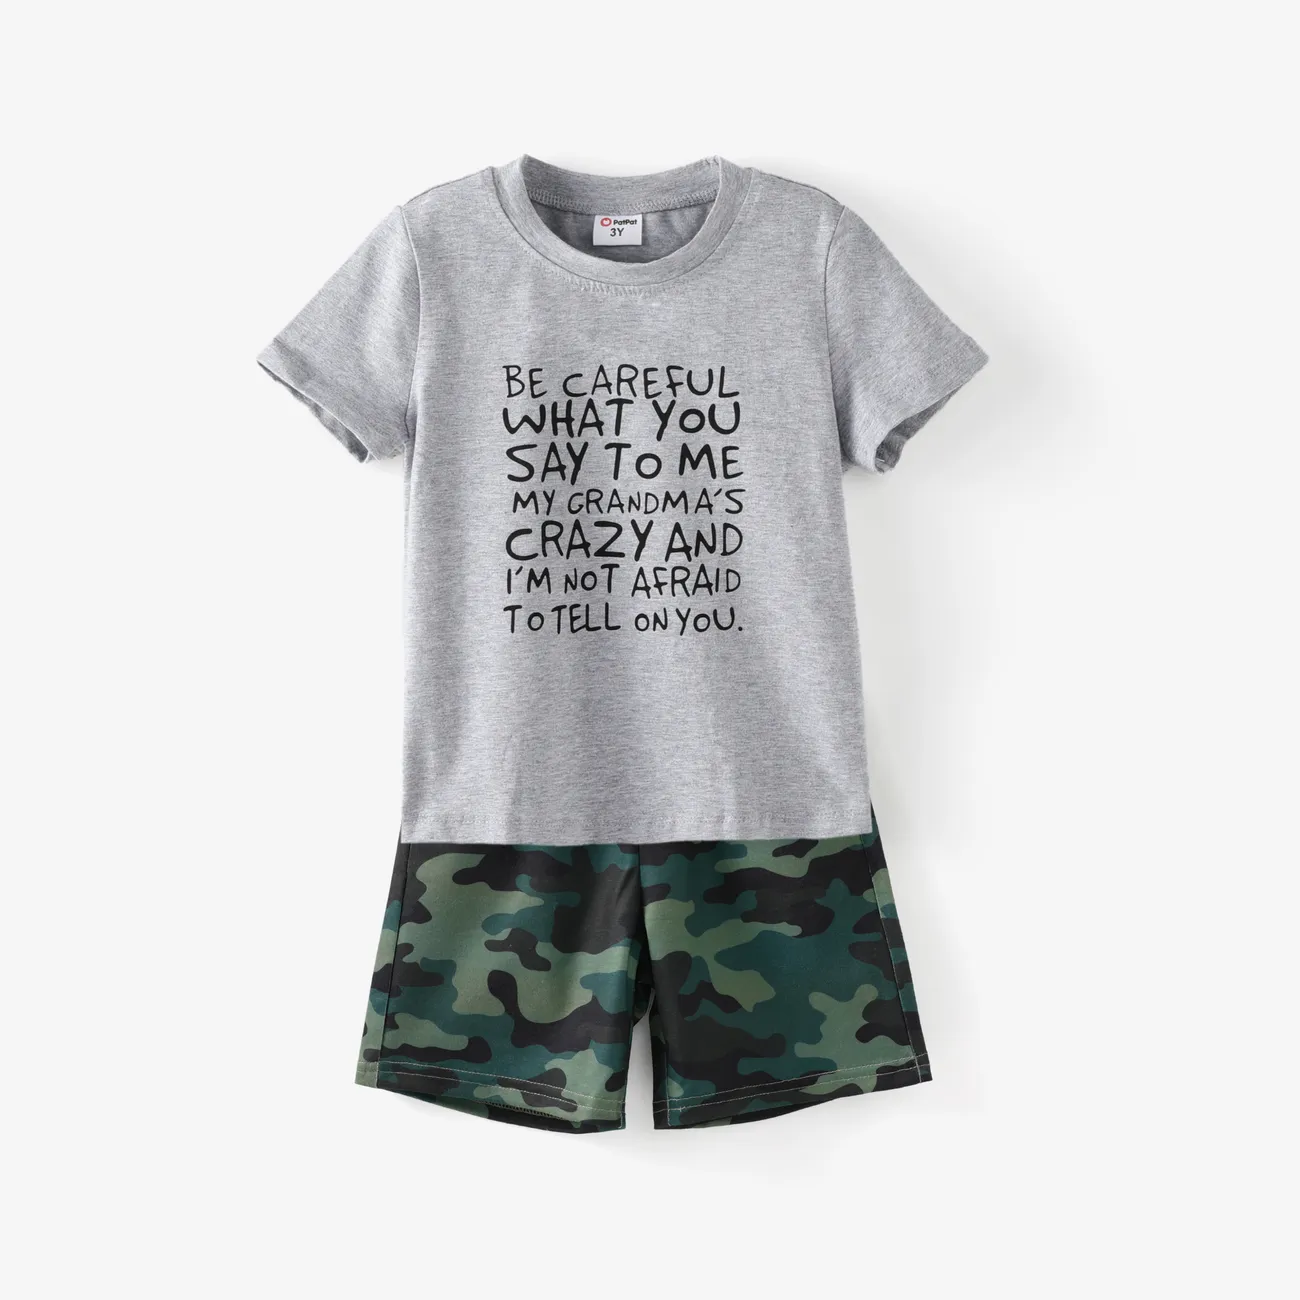 Elastische Shorts mit Brief-/Tarndruck für Kleinkinder/Kinderjungen Tarnmuster big image 1